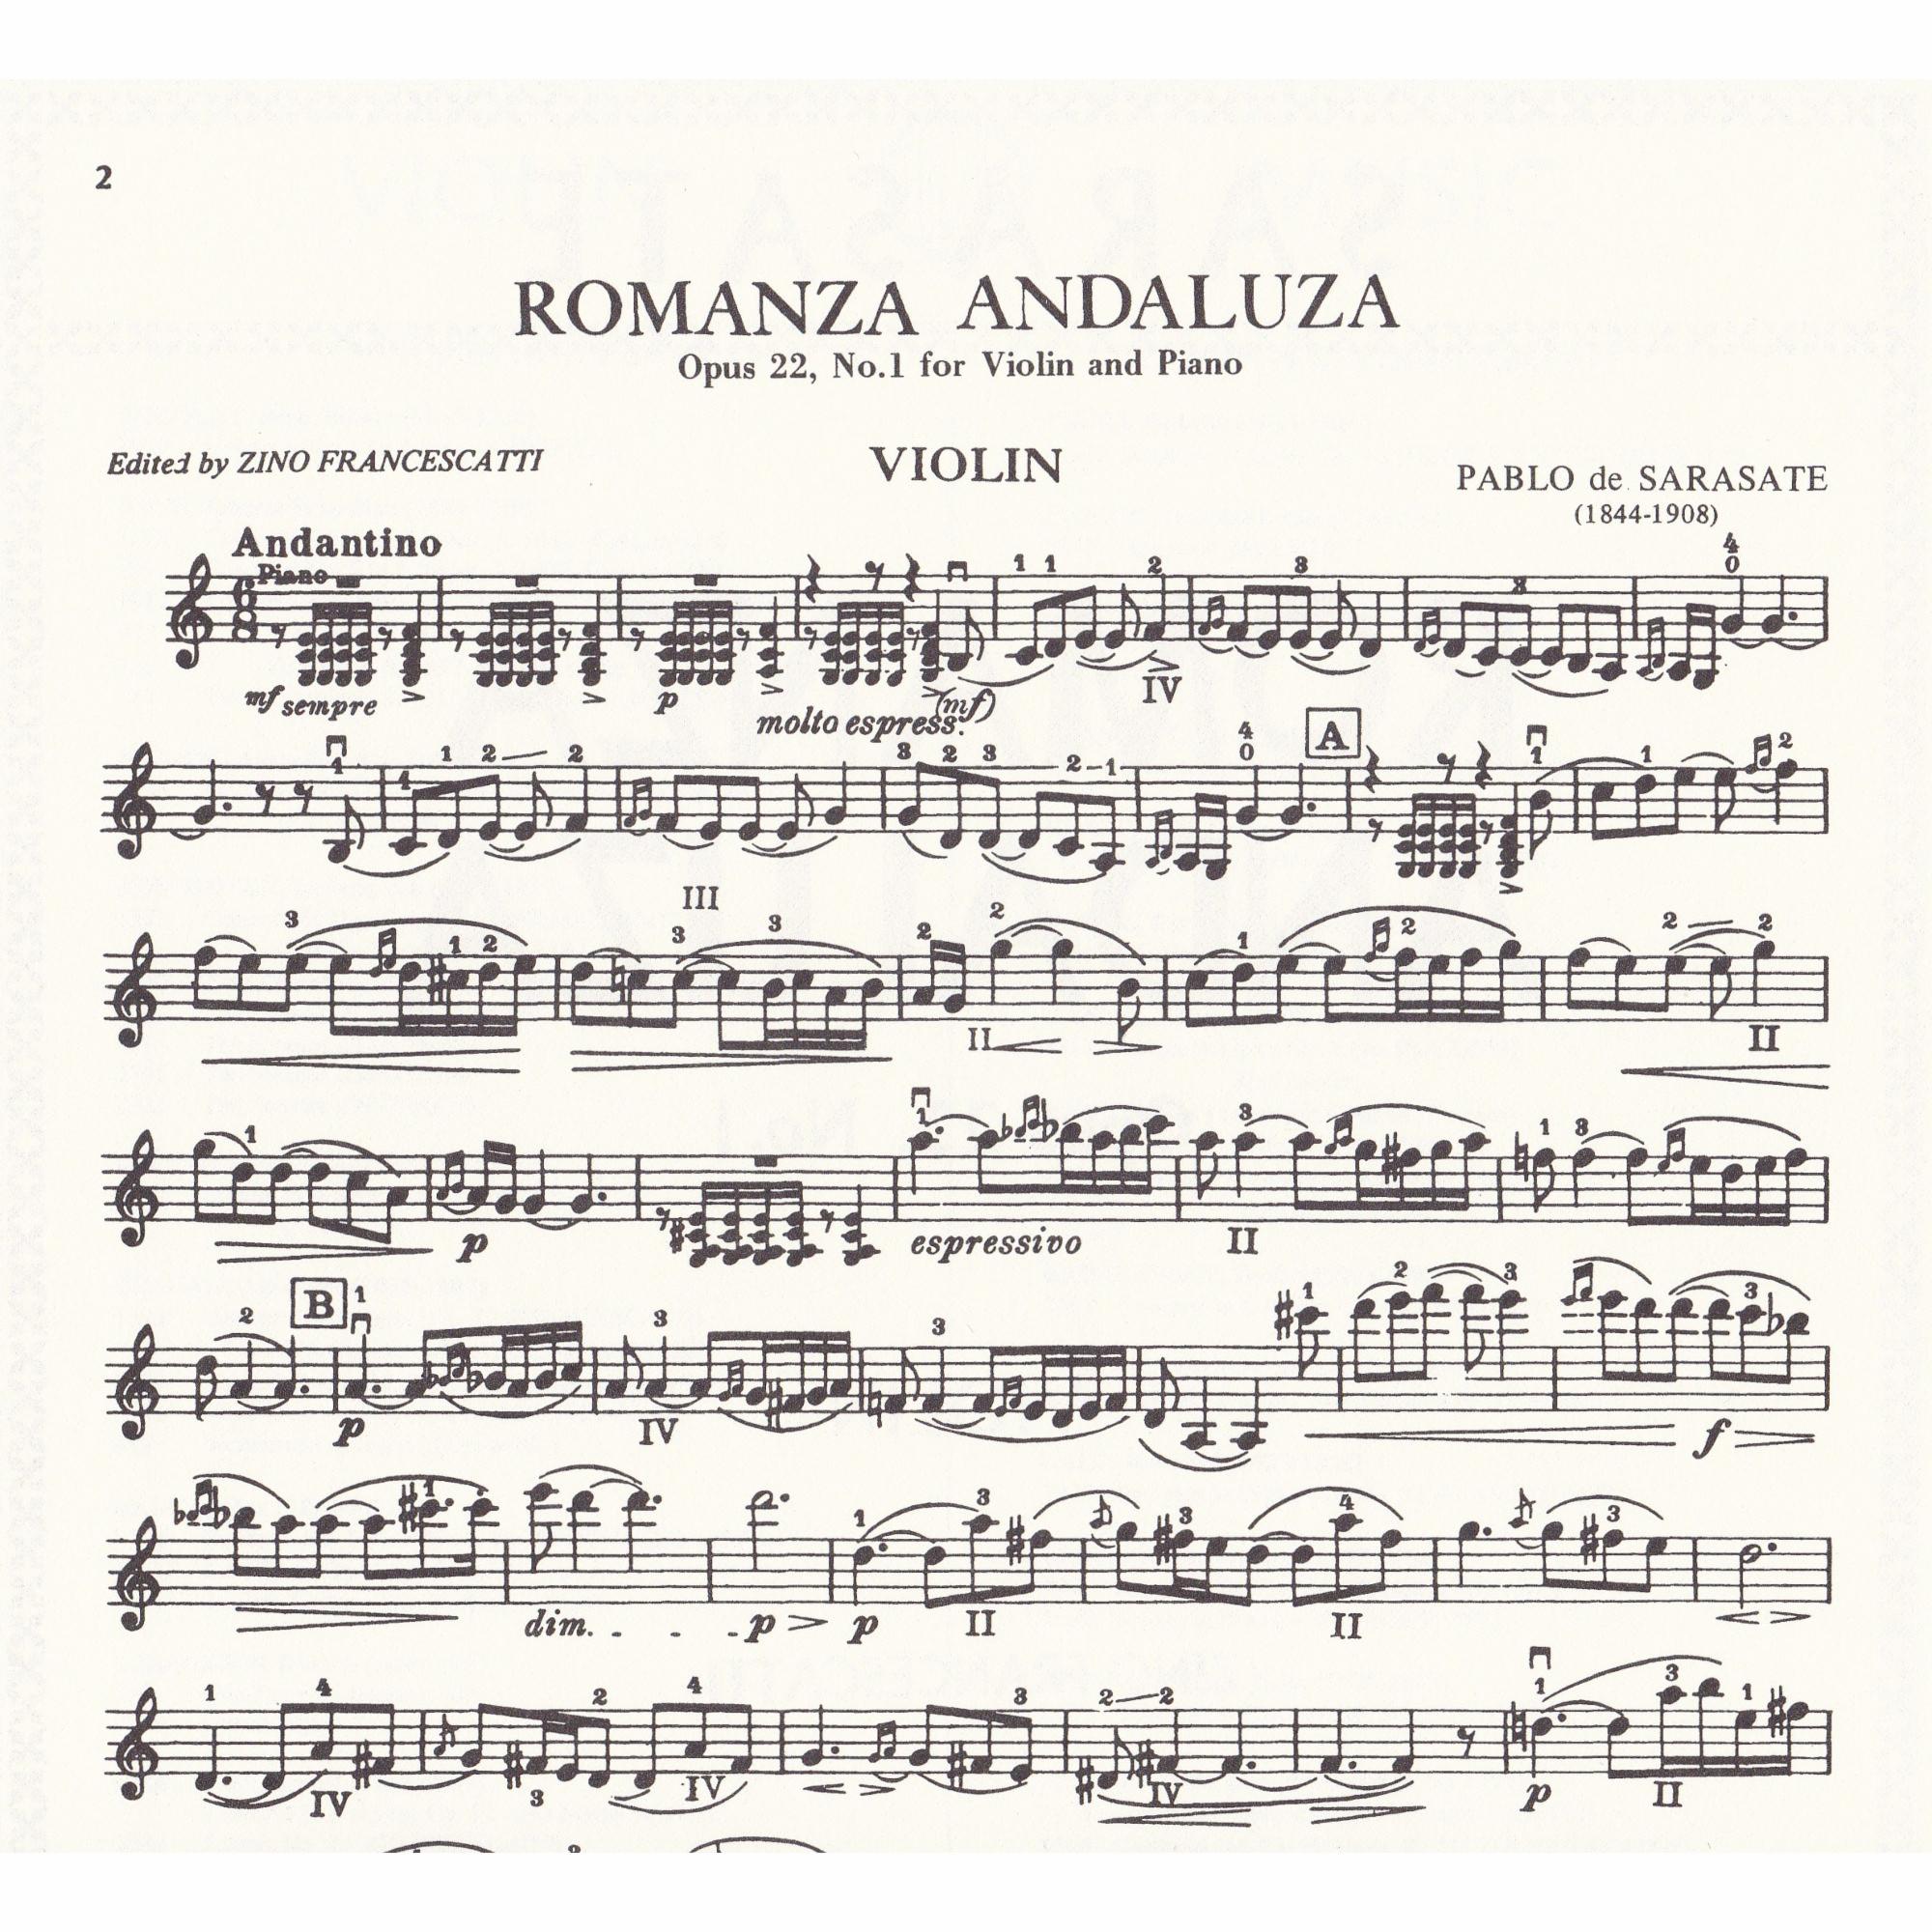 Romanza Andaluza for Violin and Piano, Op. 22, No. 1